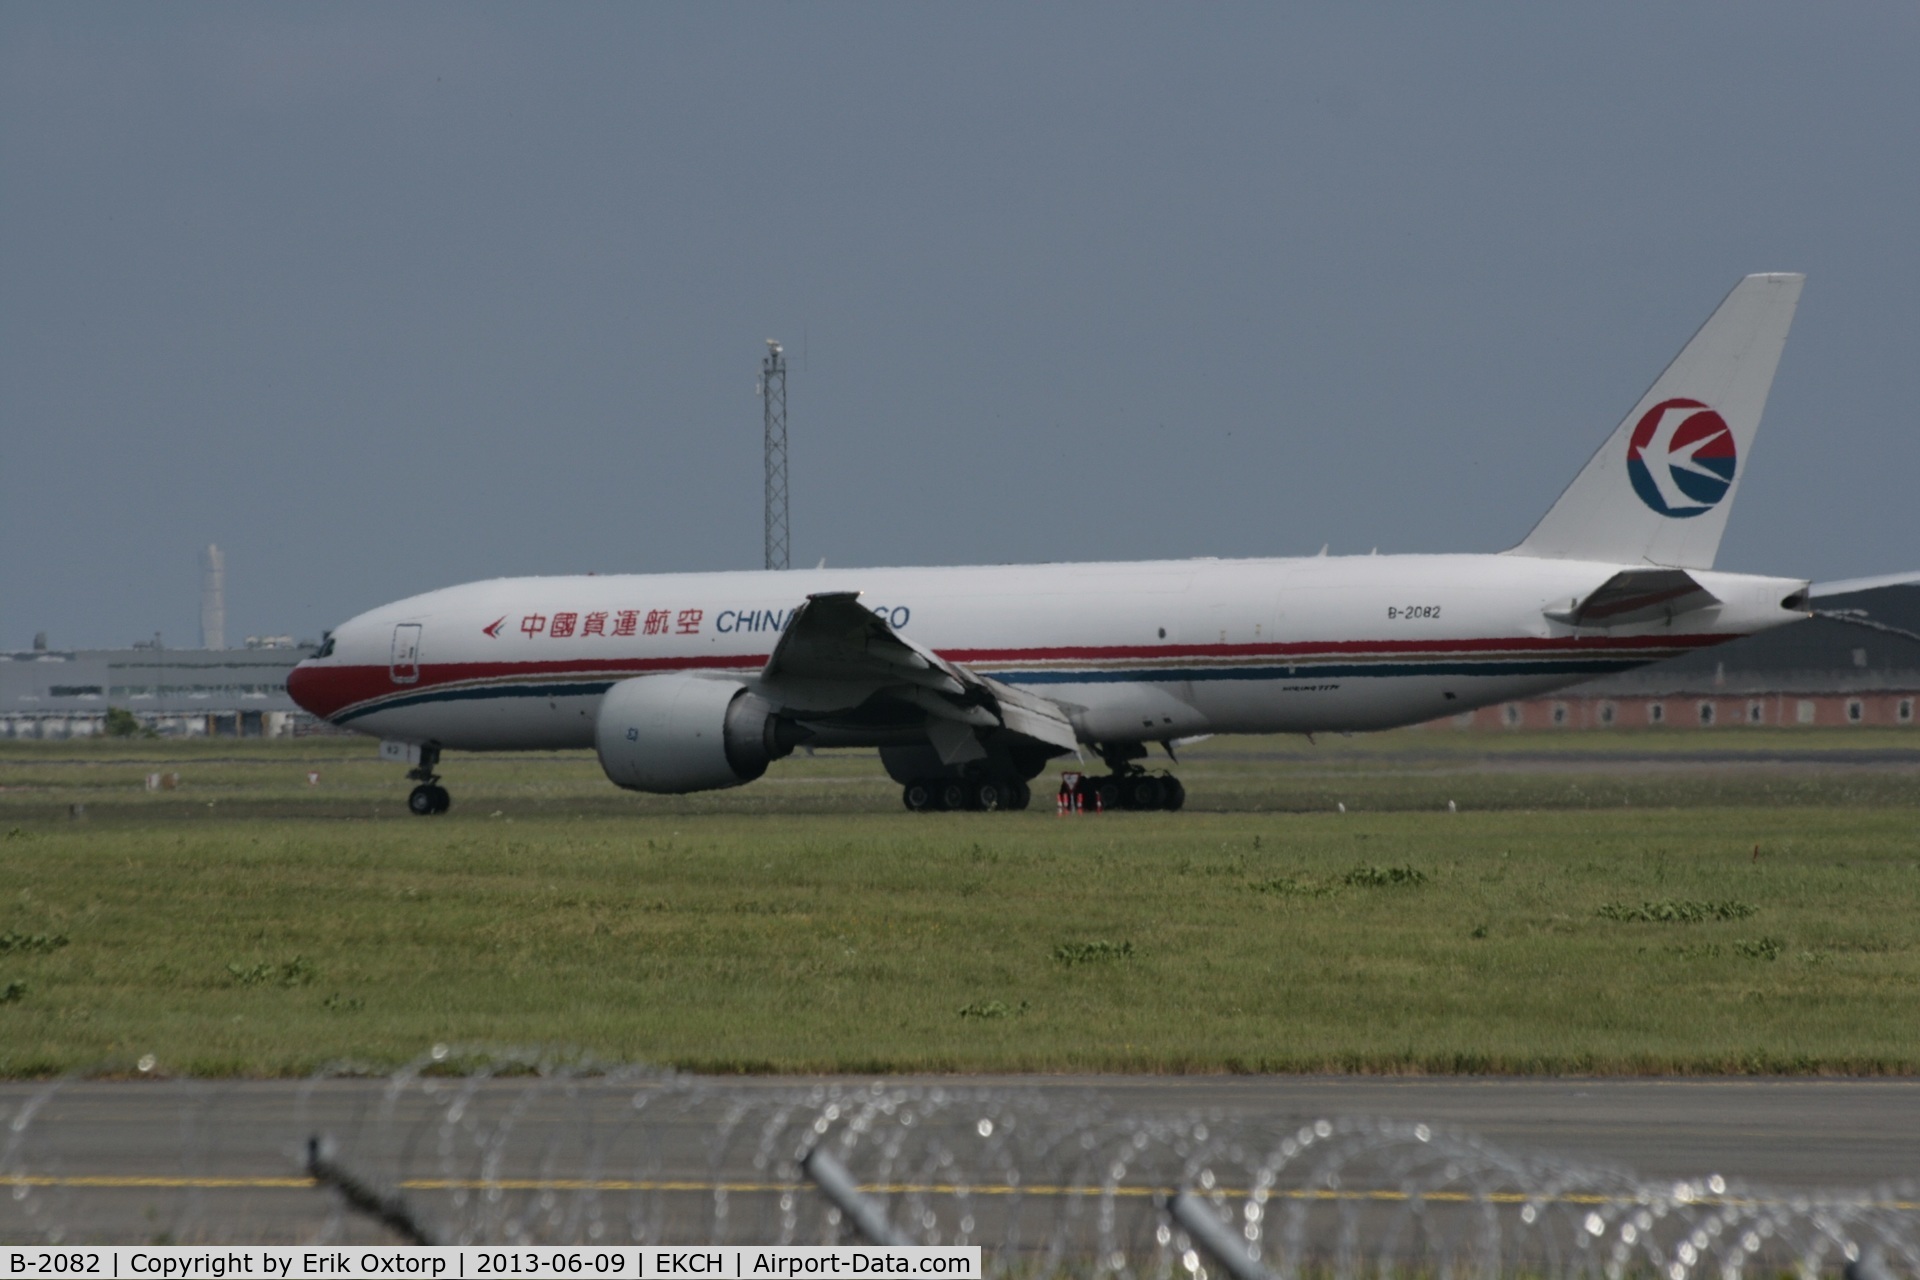 B-2082, 2010 Boeing 777-F6N C/N 37716, Just arrived on rw 22L